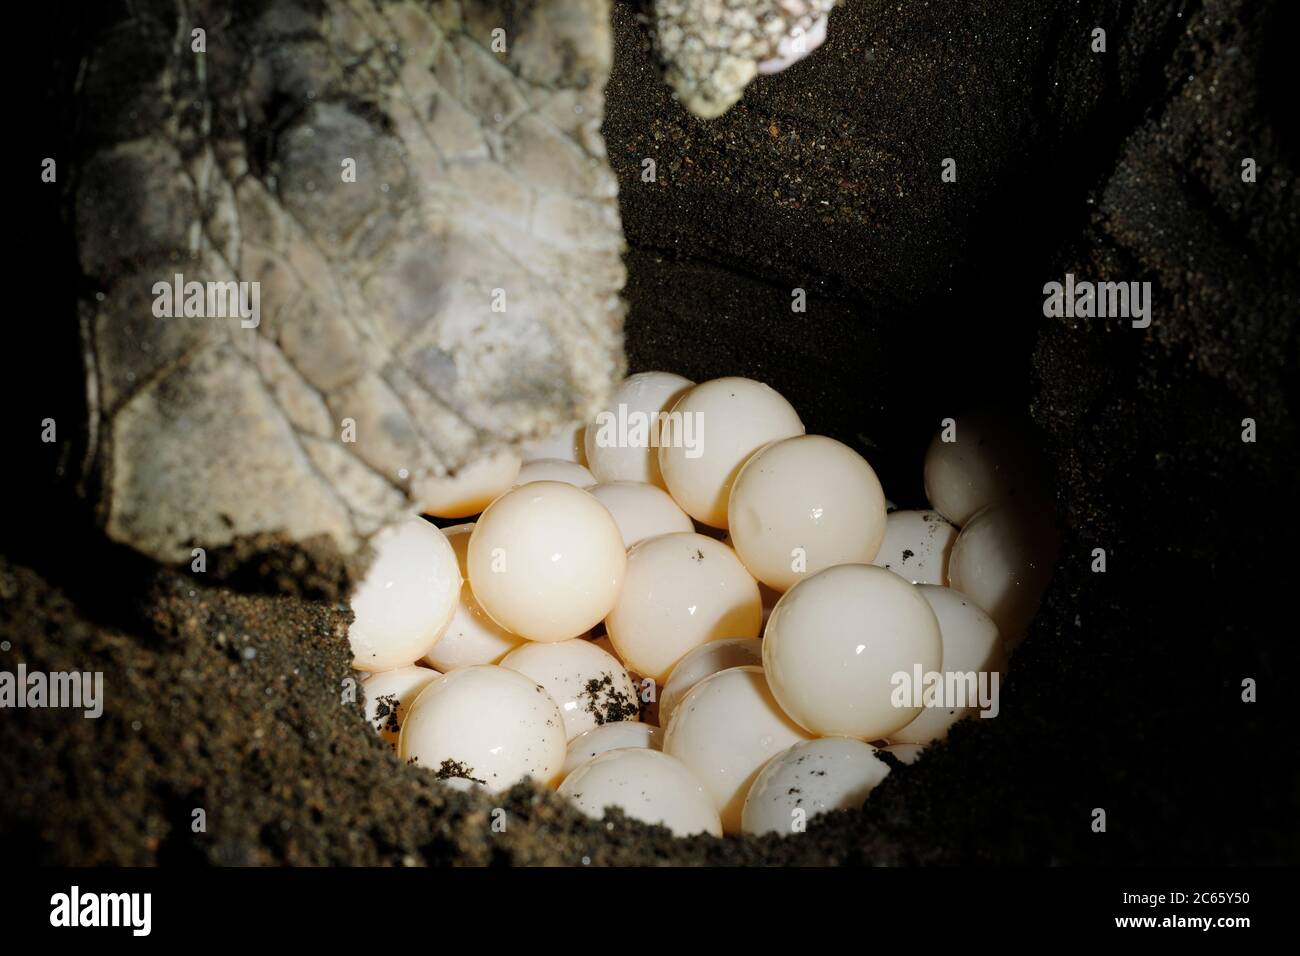 Dopo aver scavato un buco di 50 - 30 centimetri di profondità con le sue pinne posteriori, la tartaruga di mare di ridley (Lepichelys olivacea) depone circa 100 uova. Foto Stock